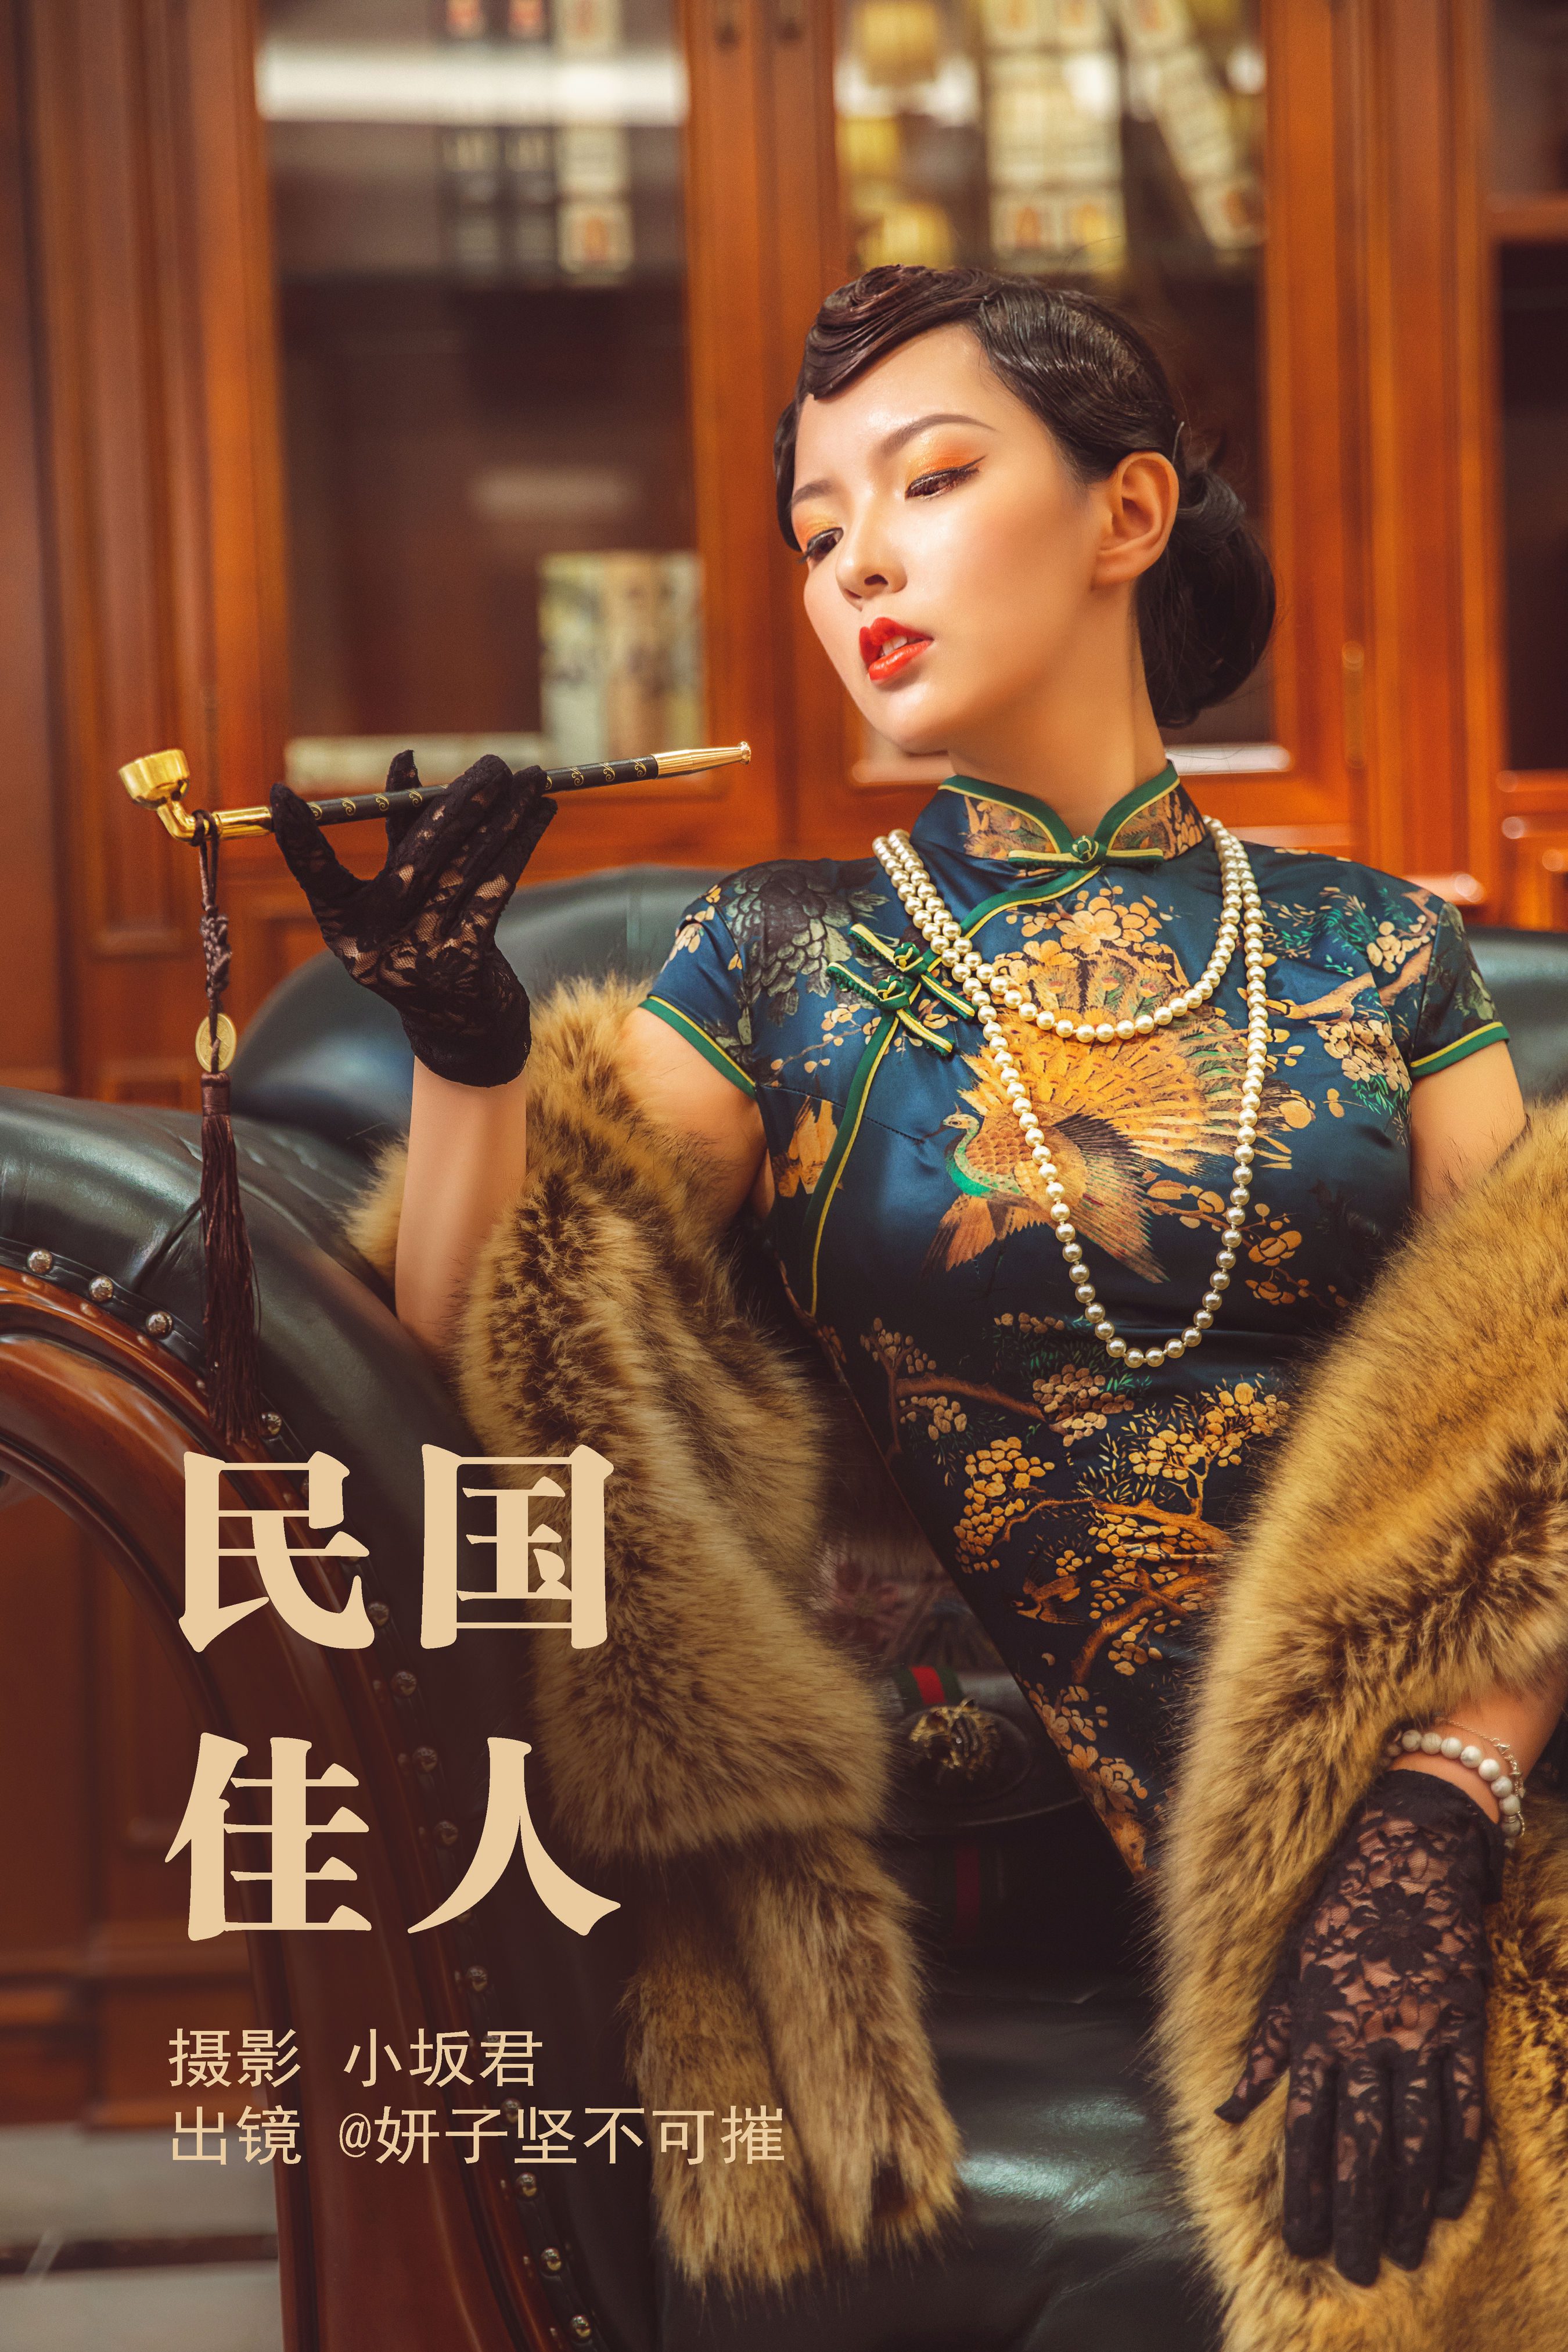 民国佳人 旗袍 摄影 古典 中国风 人像 女人 惊艳 佳人